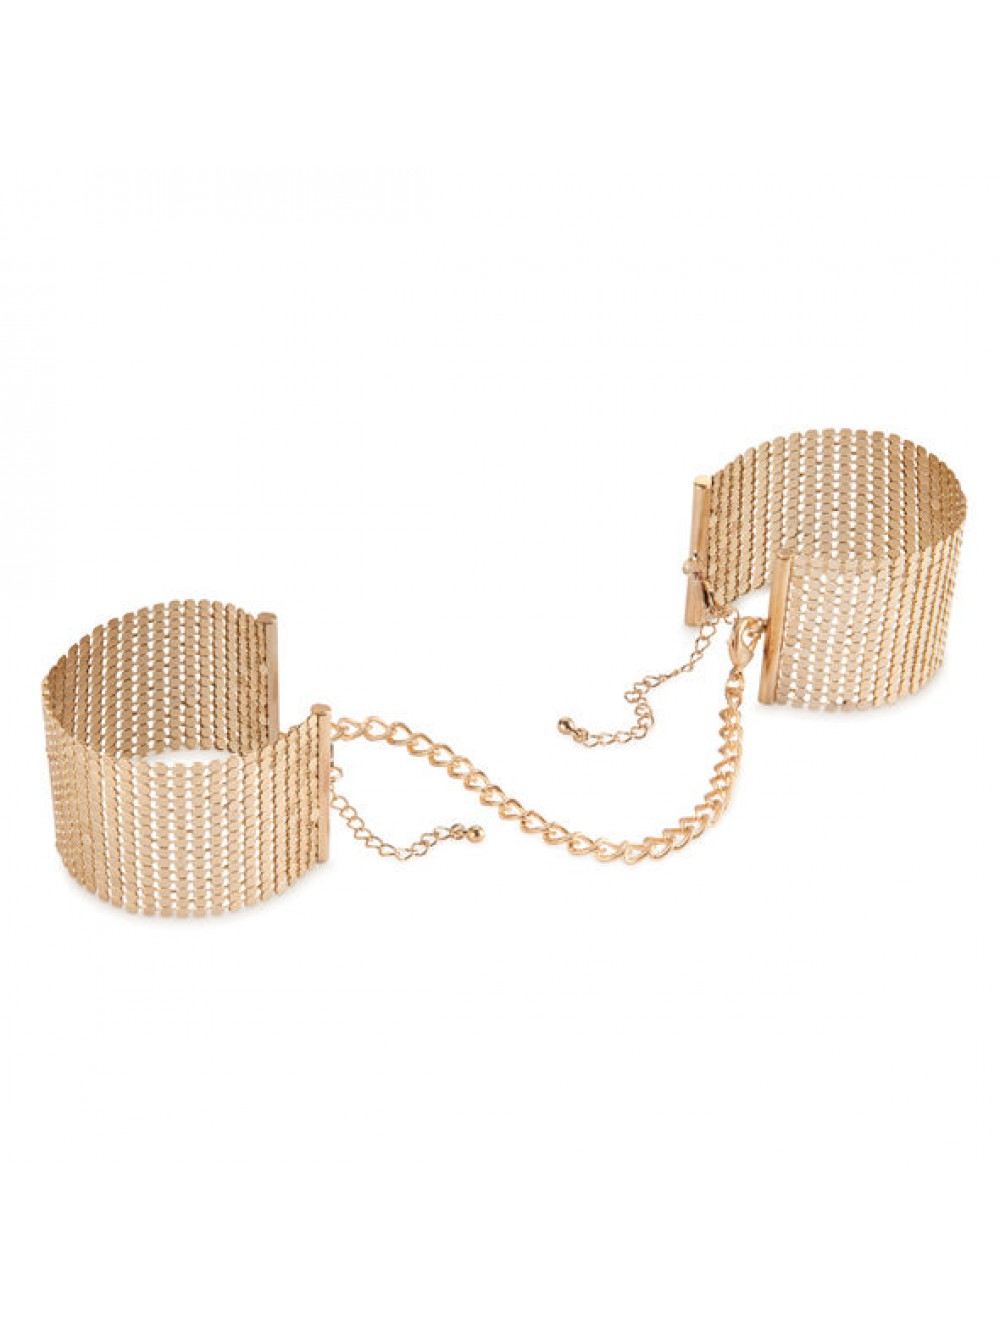 Bijoux Indiscrets Desir Metallique handcuffs oro braccialetto sexy lingerie Gift